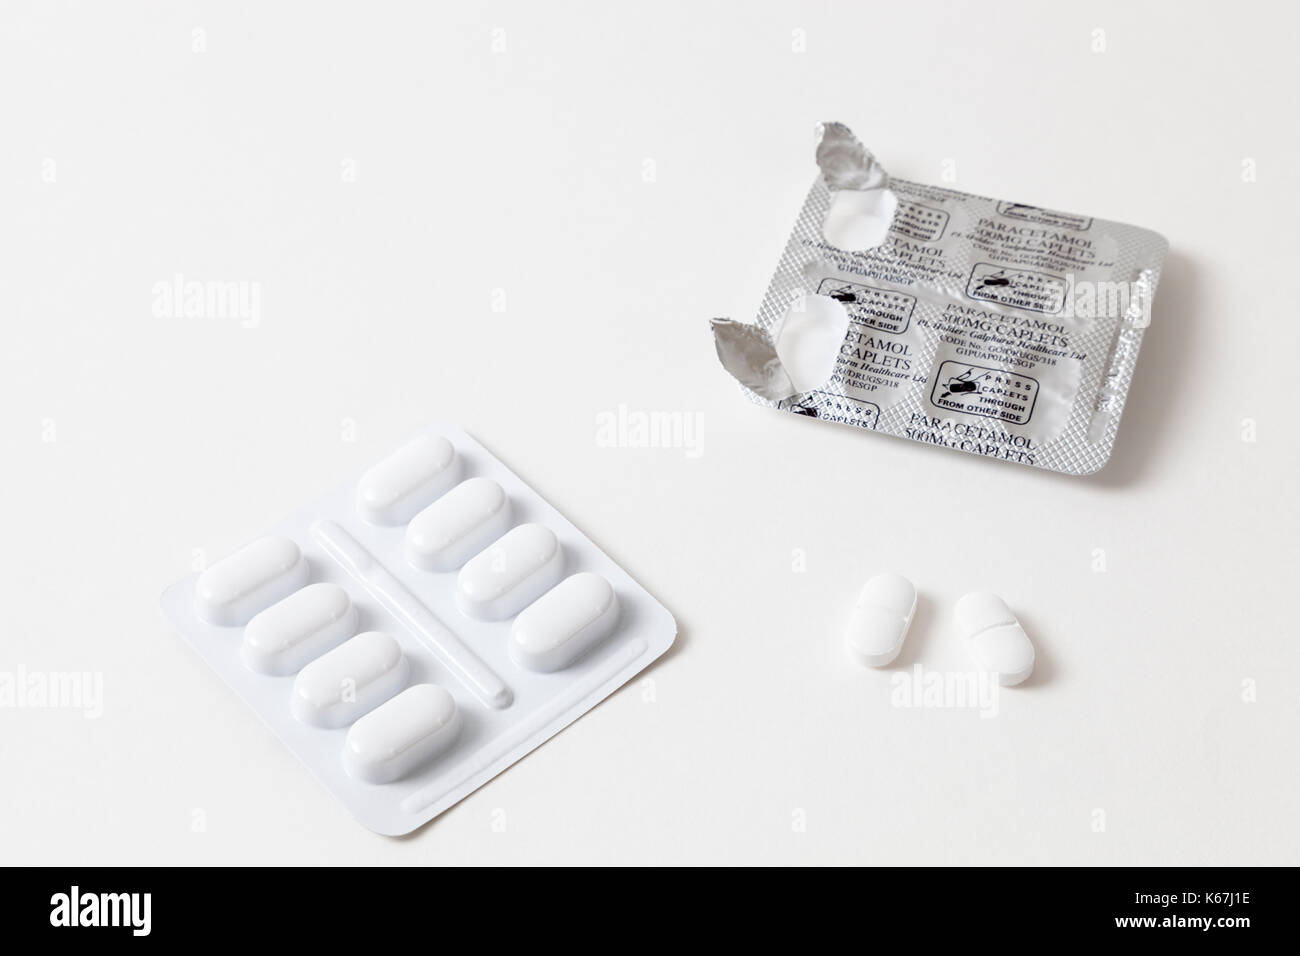 Schmerzmittel: Öffnen Sie den Blister Pack von Paracetamol Pillen oder Tabletten mit zwei Paracetamol 500 mg Caplets entfernt. Stockfoto